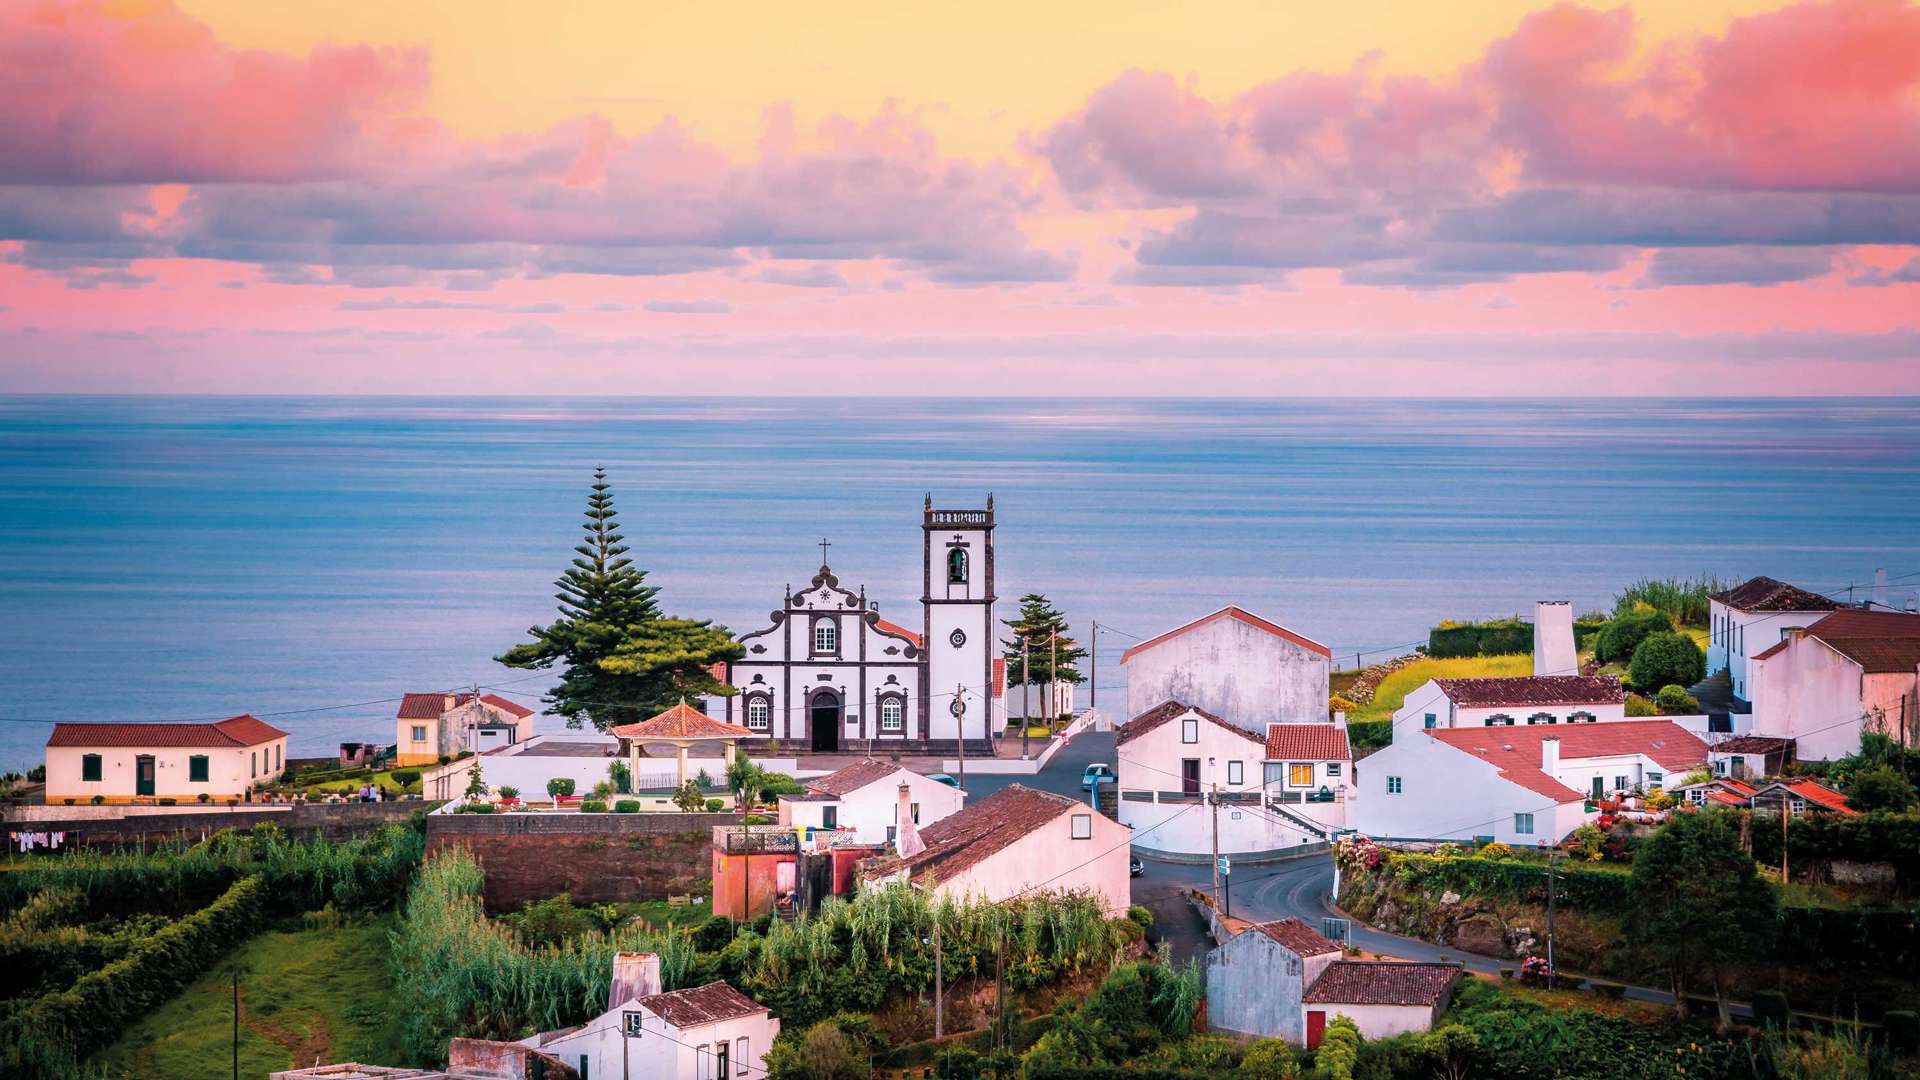 Village In Nordeste, Sao Miguel Island, Azores, Portugal